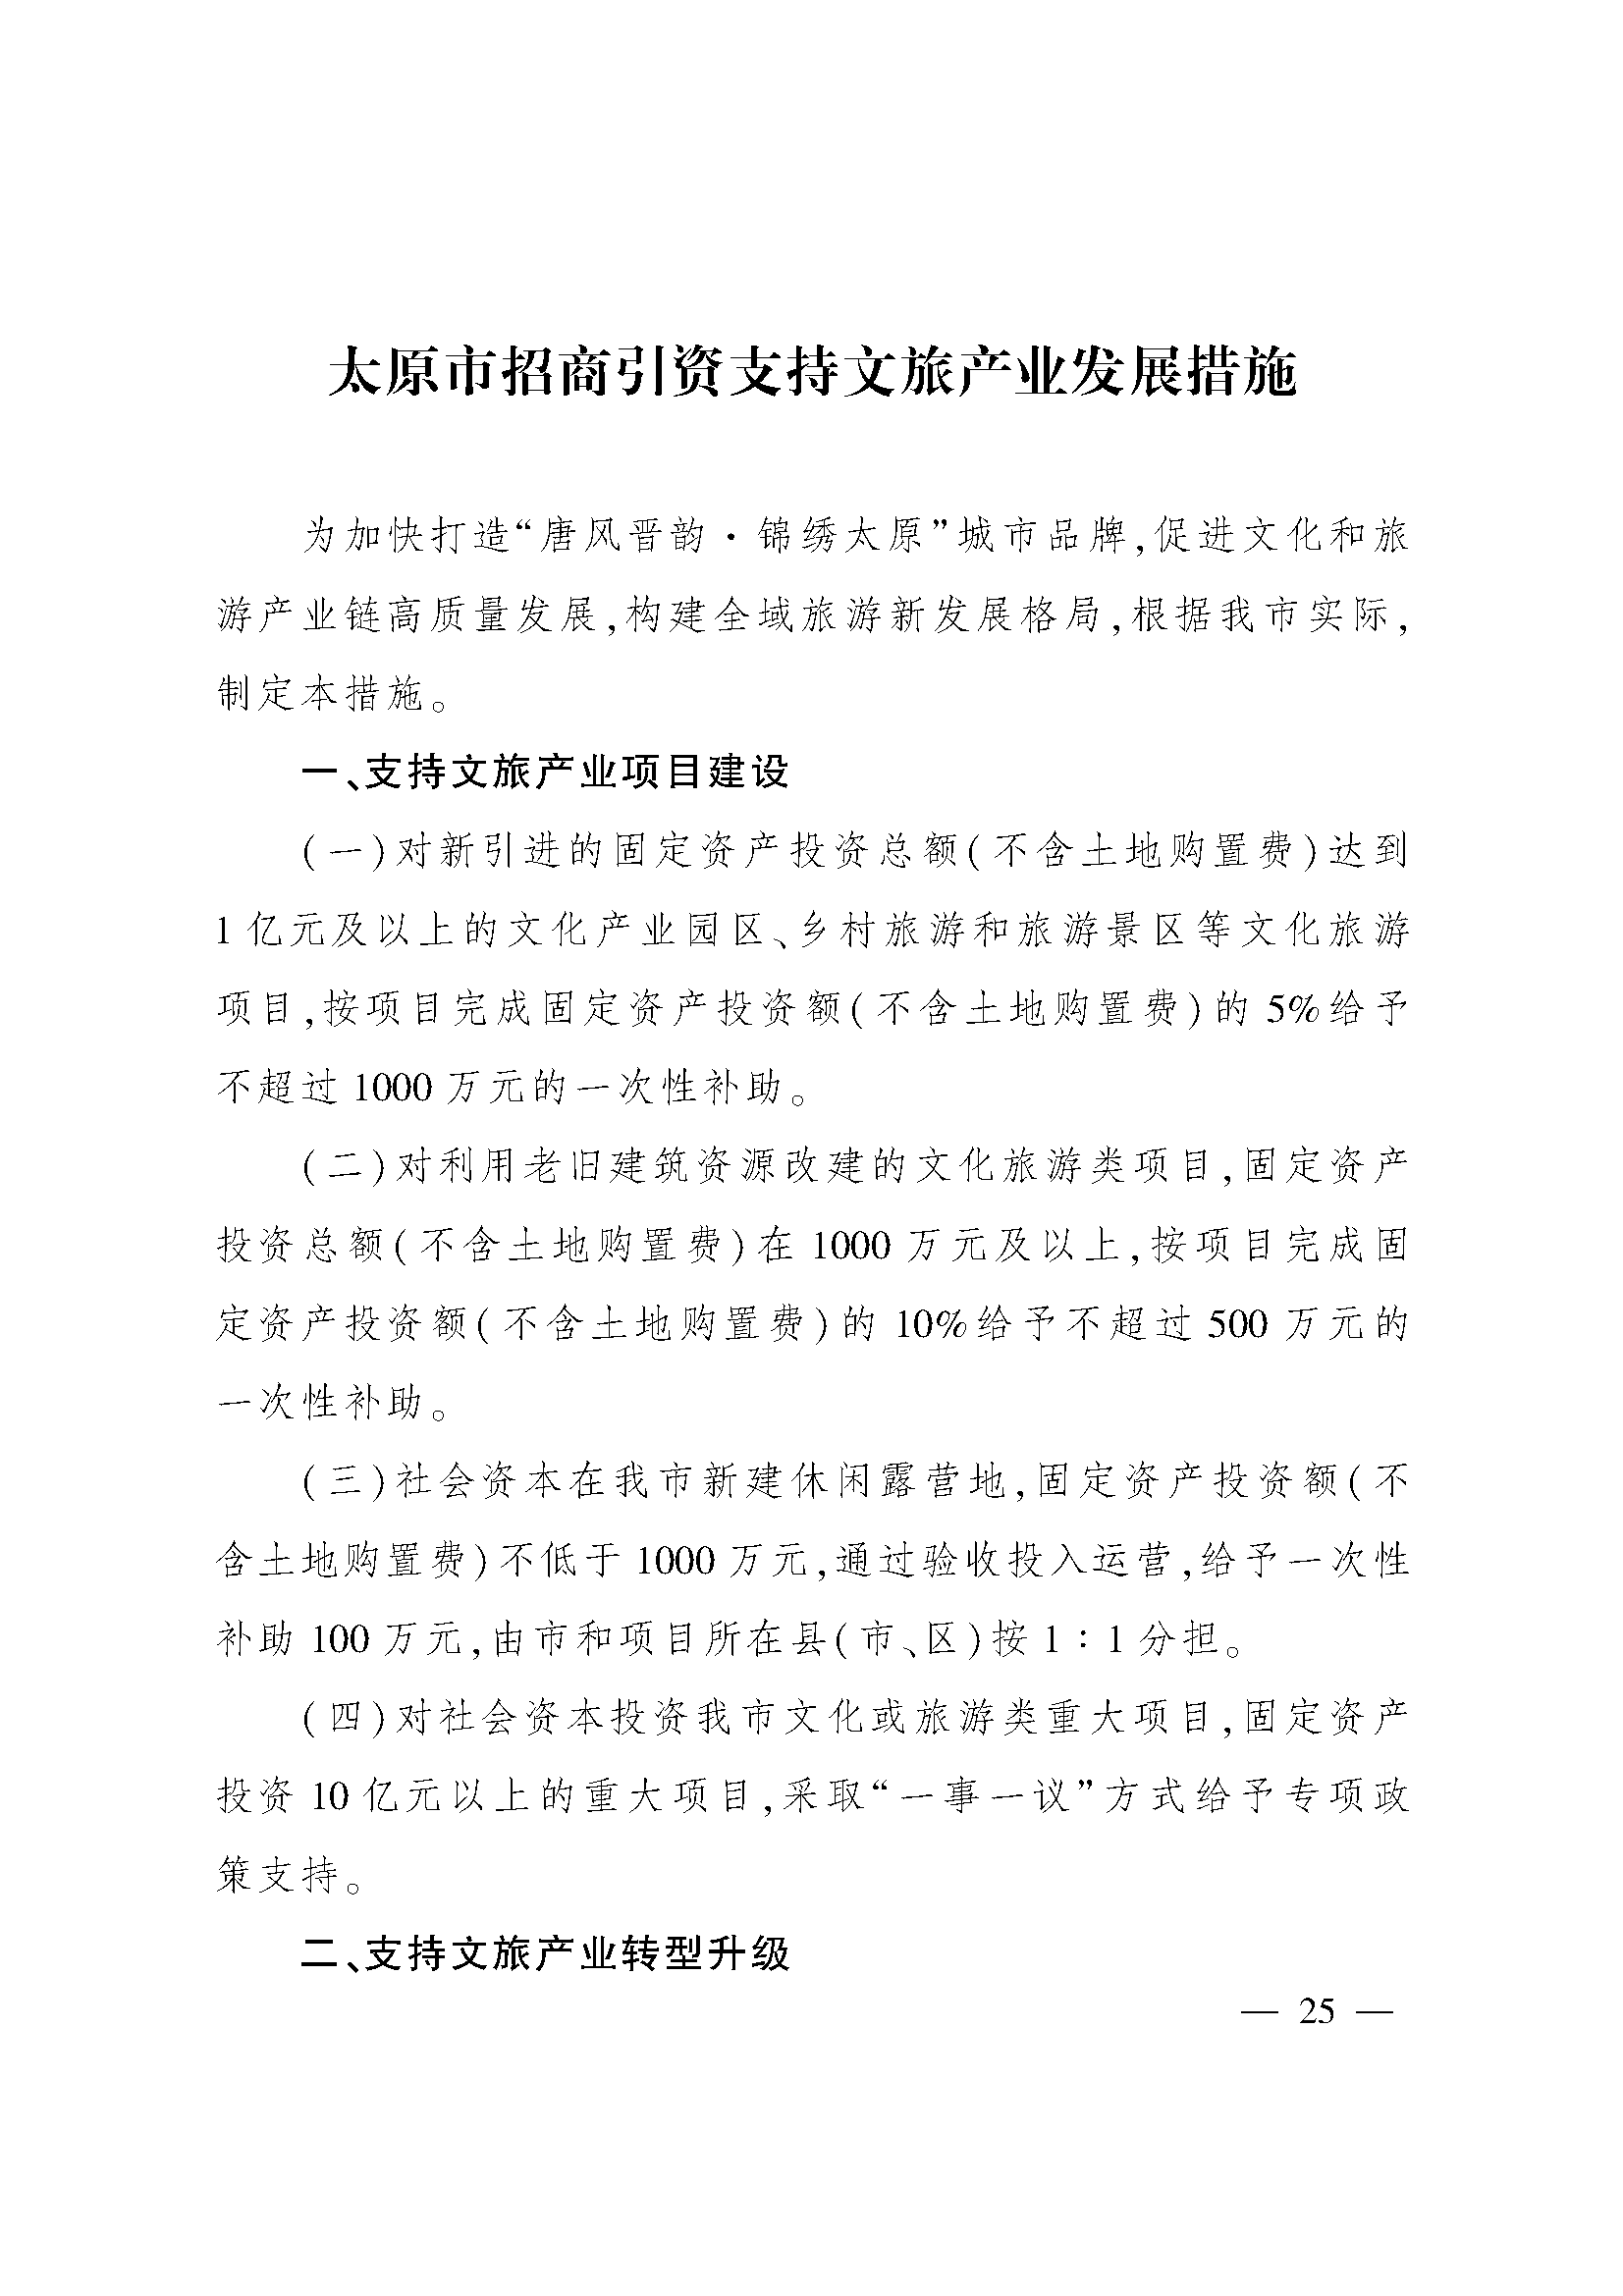 太原市人民政府办公室关于印发太原市招商引资若干措施的通知(图25)